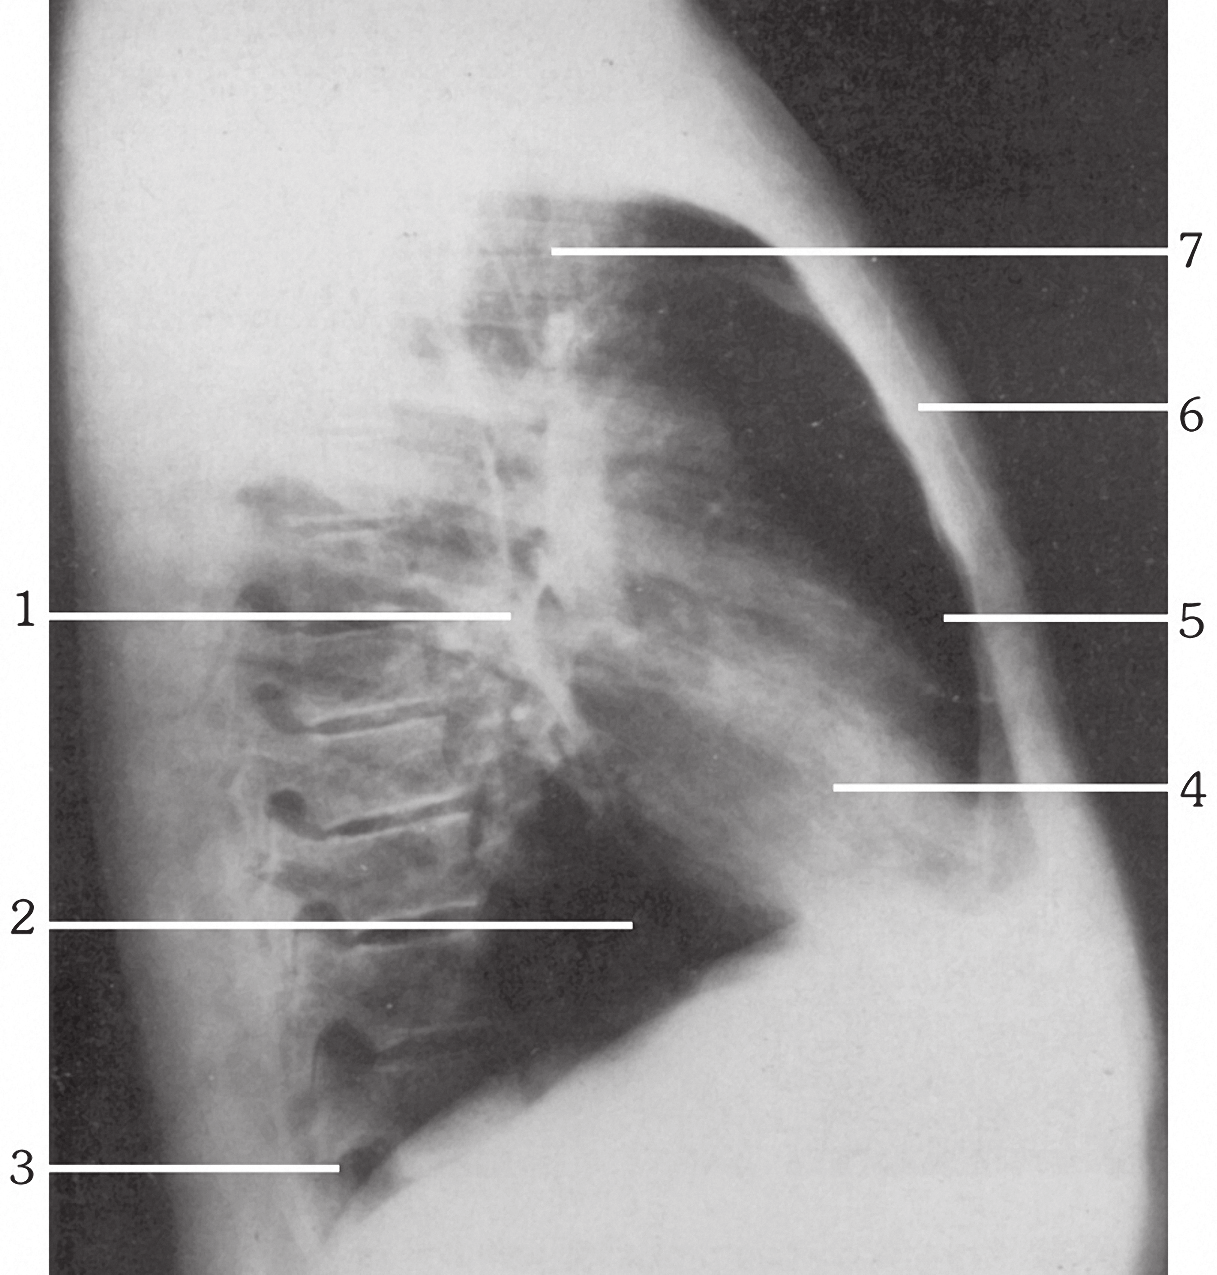 74 Βασικές Προβολές Αναπνευστικού Σύστηματος Οι ερωτήσεις 70-74 αναφέρονται στην ακτινογραφική ανατομία της ο-π ακτινογραφίας θώρακα της διπλανής εικόνας. Εικόνα 1.23. ( 1999 Κουμαριανός Δ.). 70. Ποιος αριθμός αντιστοιχεί στον οπισθοστερνικό χώρο; 71.